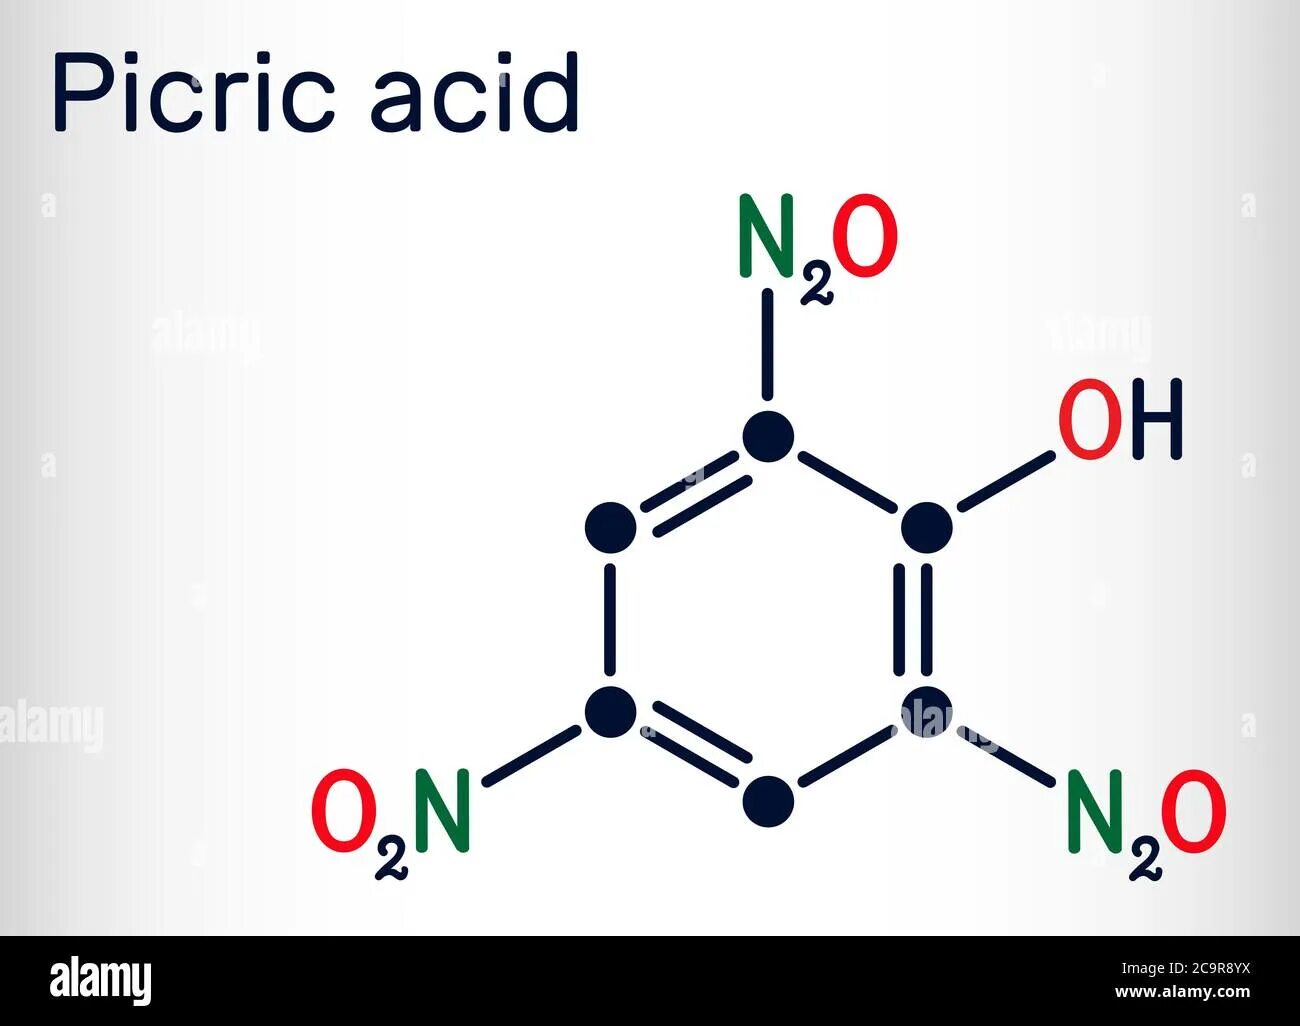 2 4 6 тринитрофенол структурная формула. Тринитрофенол пикриновая кислота. Picric acid. Тринитрофенол формула молекулярная. Тринитрофенол структурная формула.